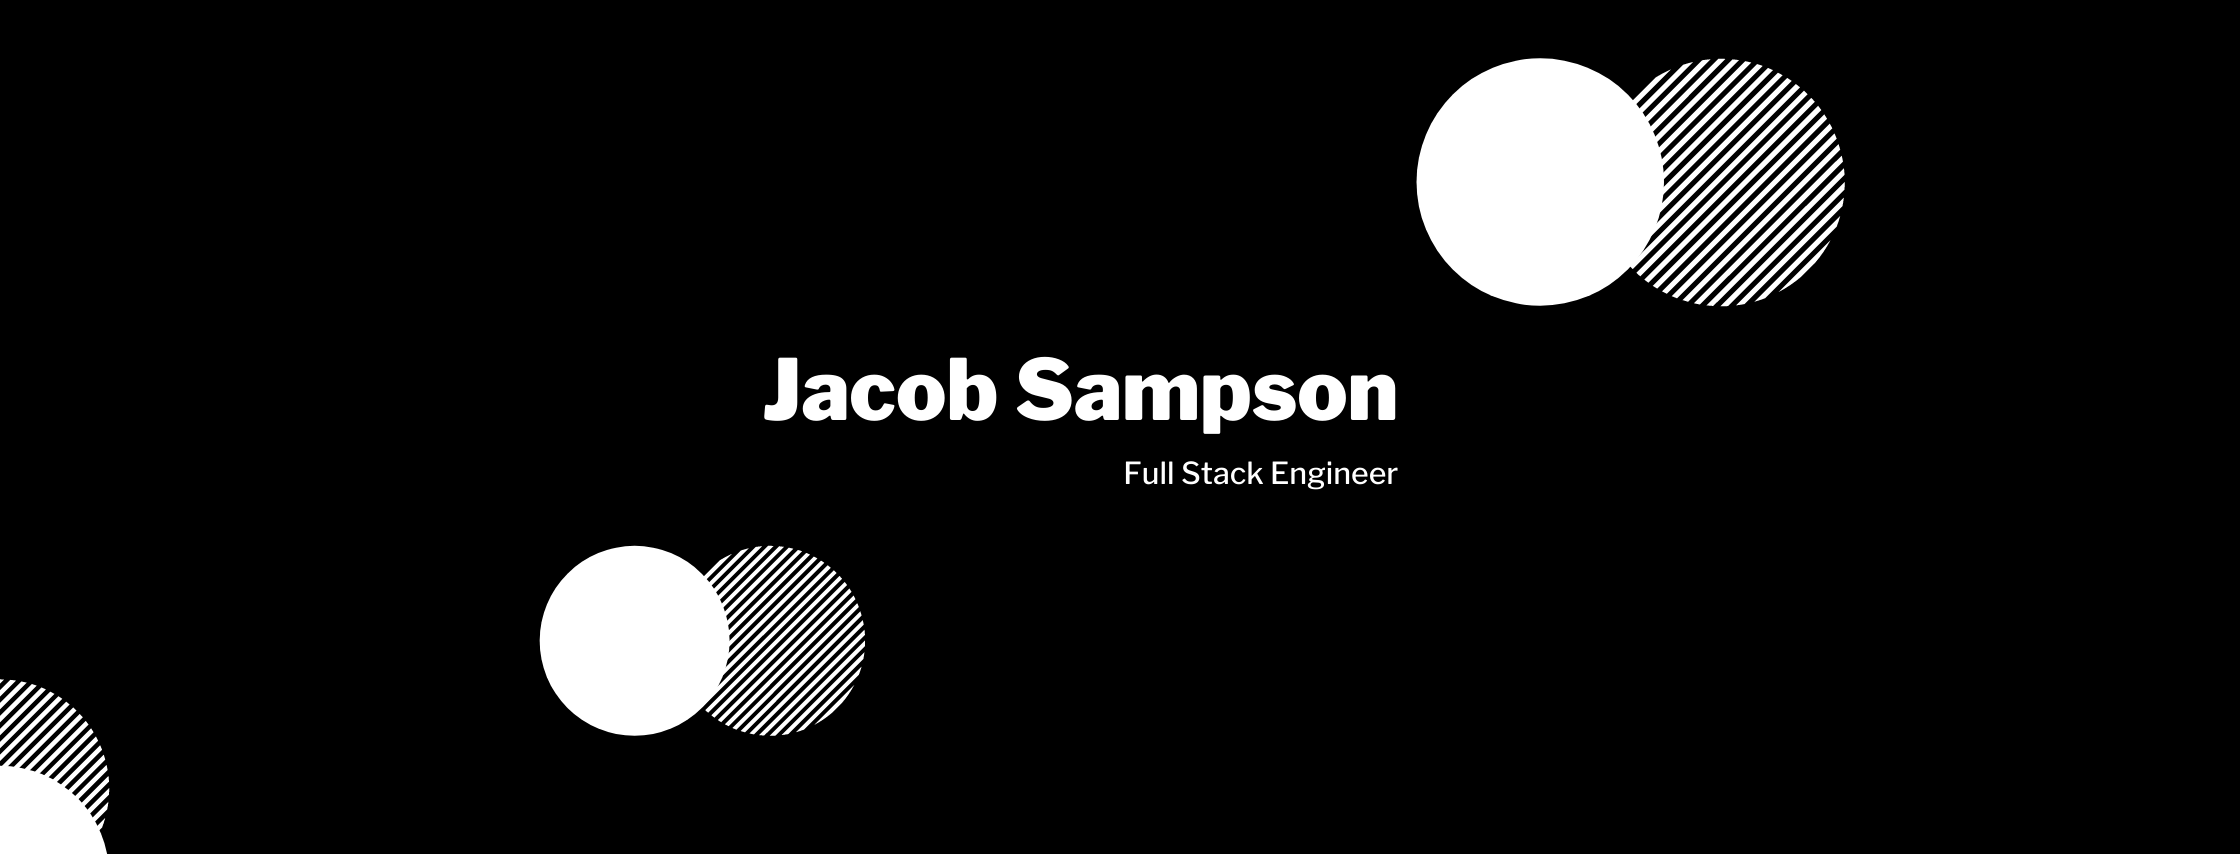 Jacob Sampson